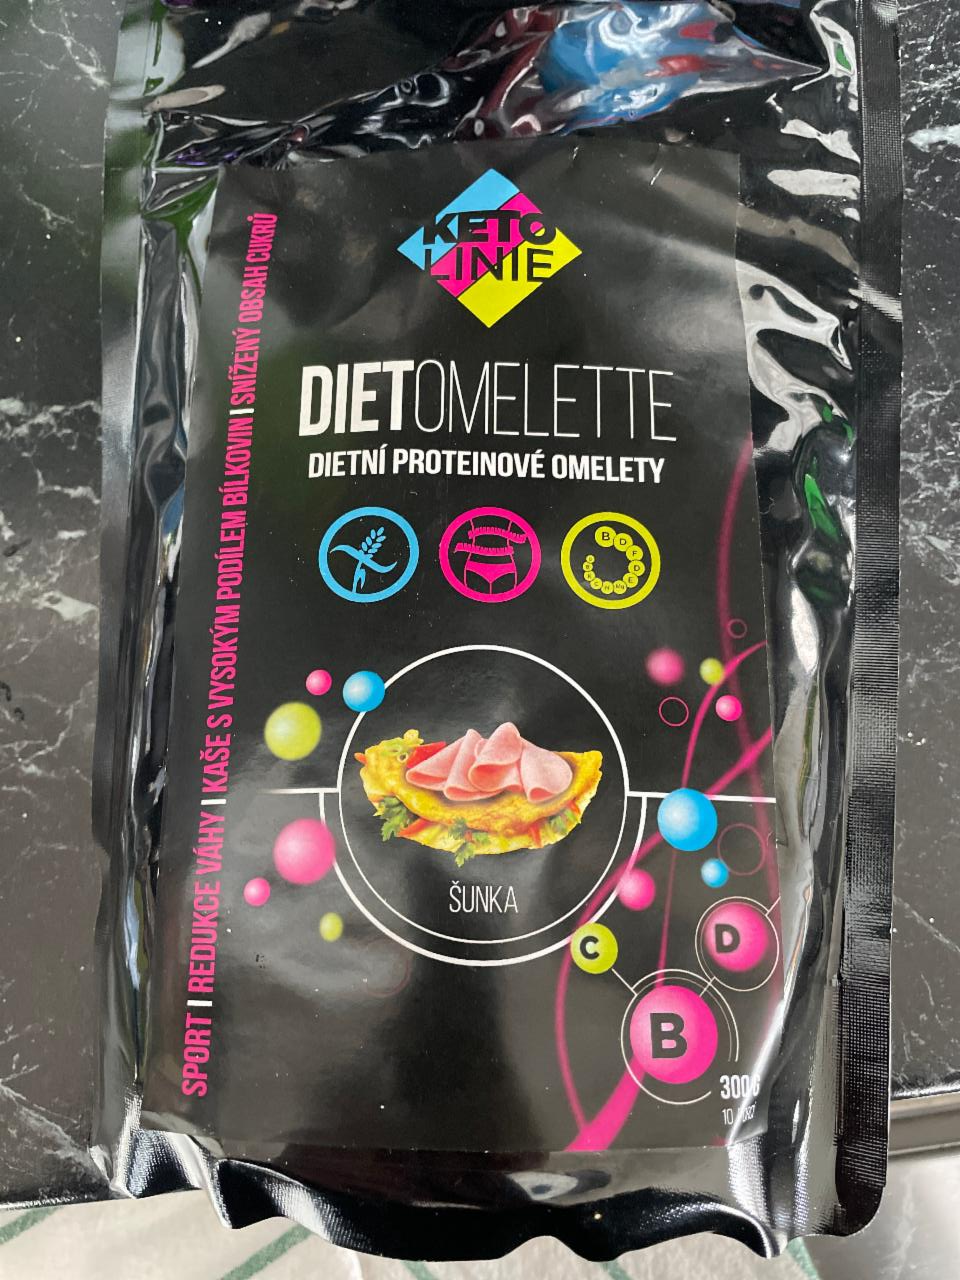 Fotografie - Dietomelette dietní proteinové omelety šunka KetoLinie